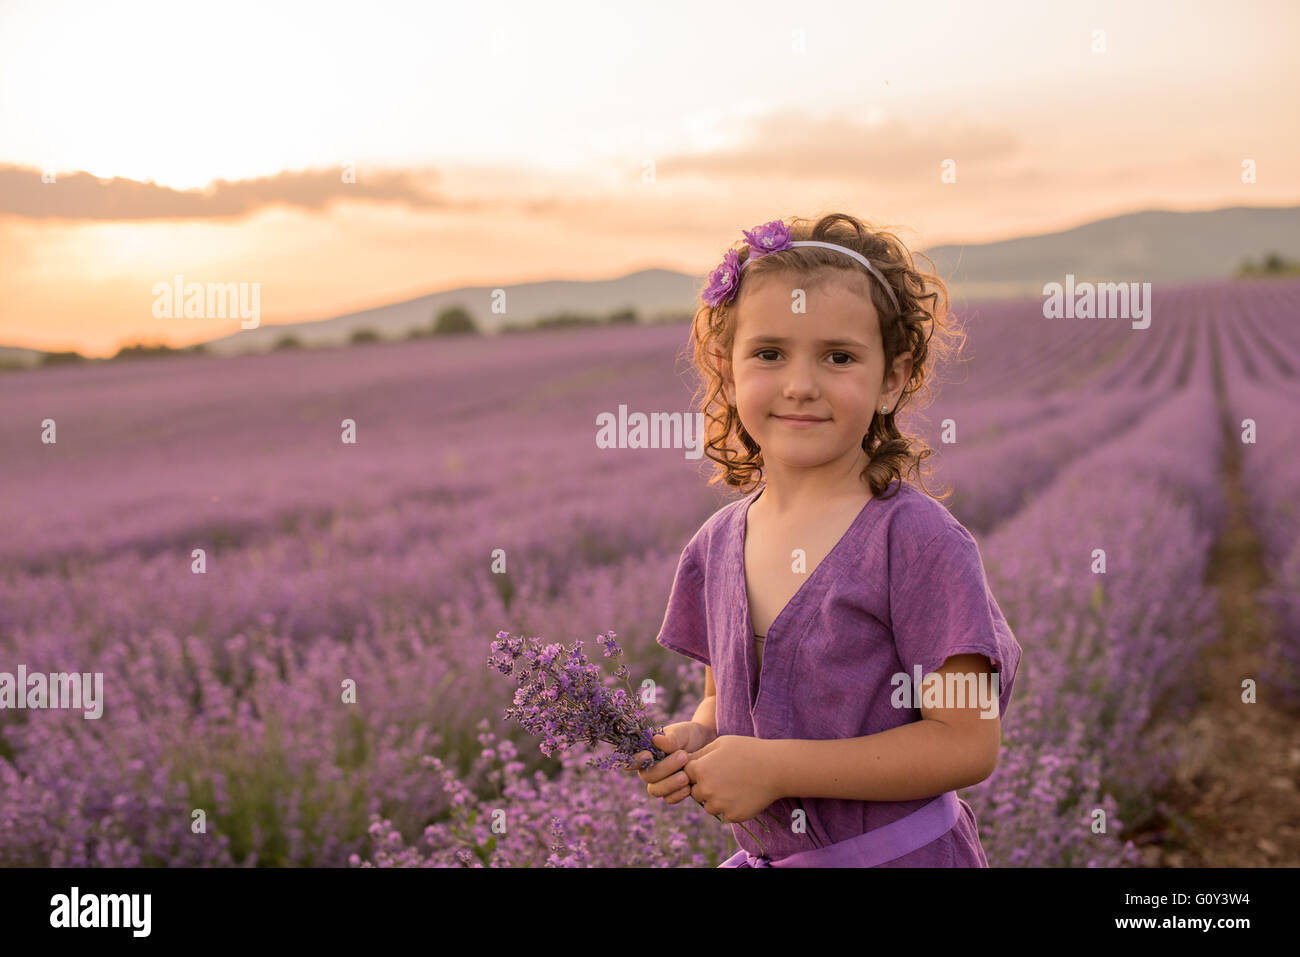 Girl standing in lavender flower field at sunset, Kazanlak, Bulgaria Stock Photo